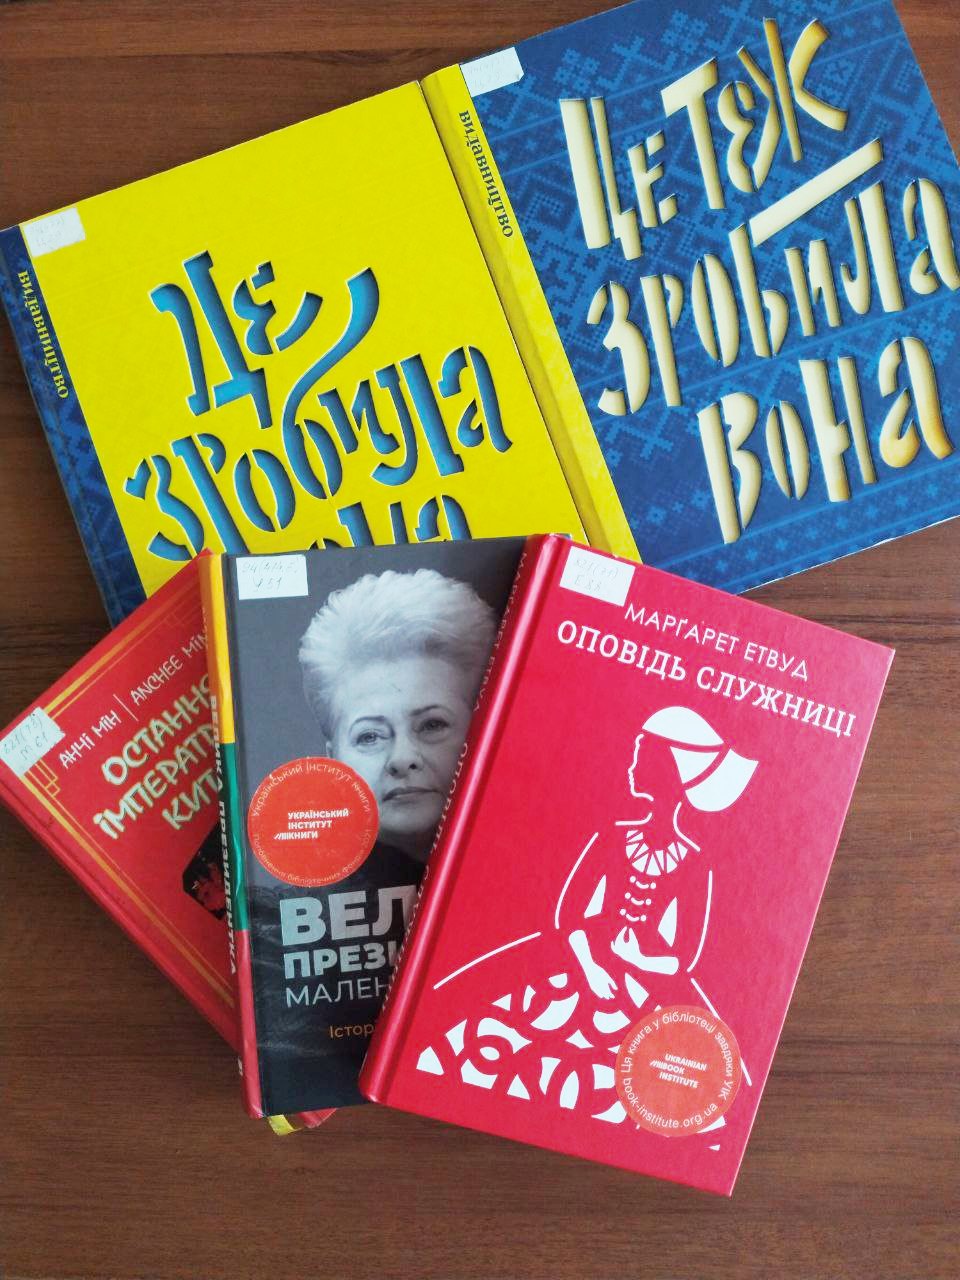 ТОП-3 книги о сильных женщинах от Библиотеки на Шевченко